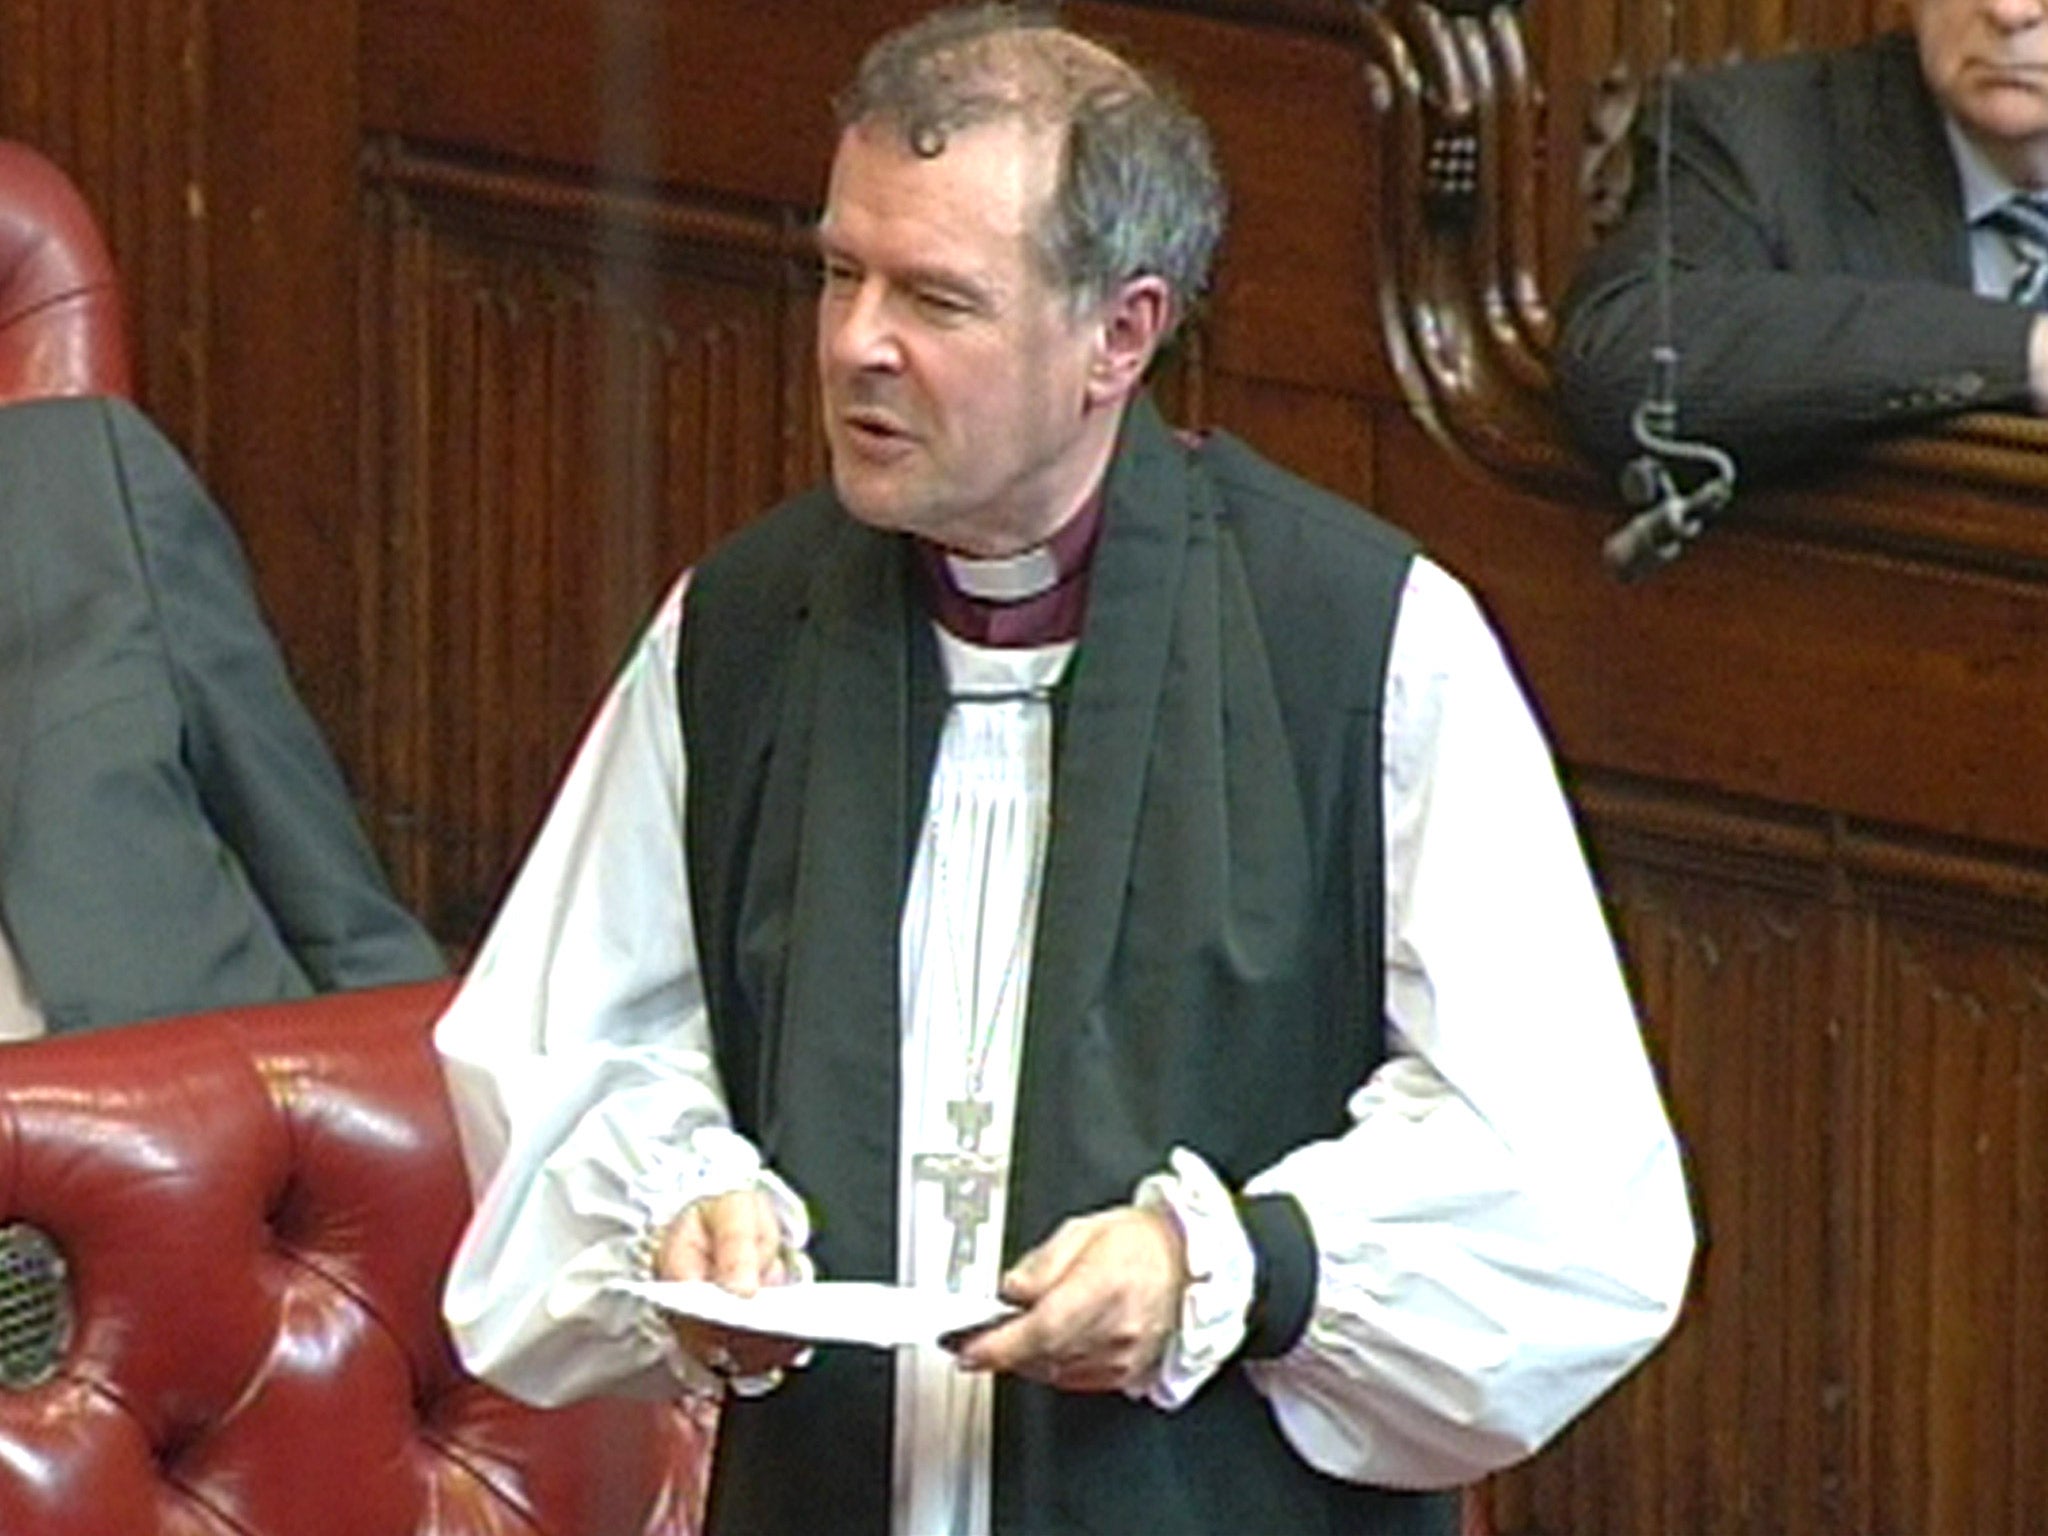 Michael Perham had been Bishop of Gloucester since 2004